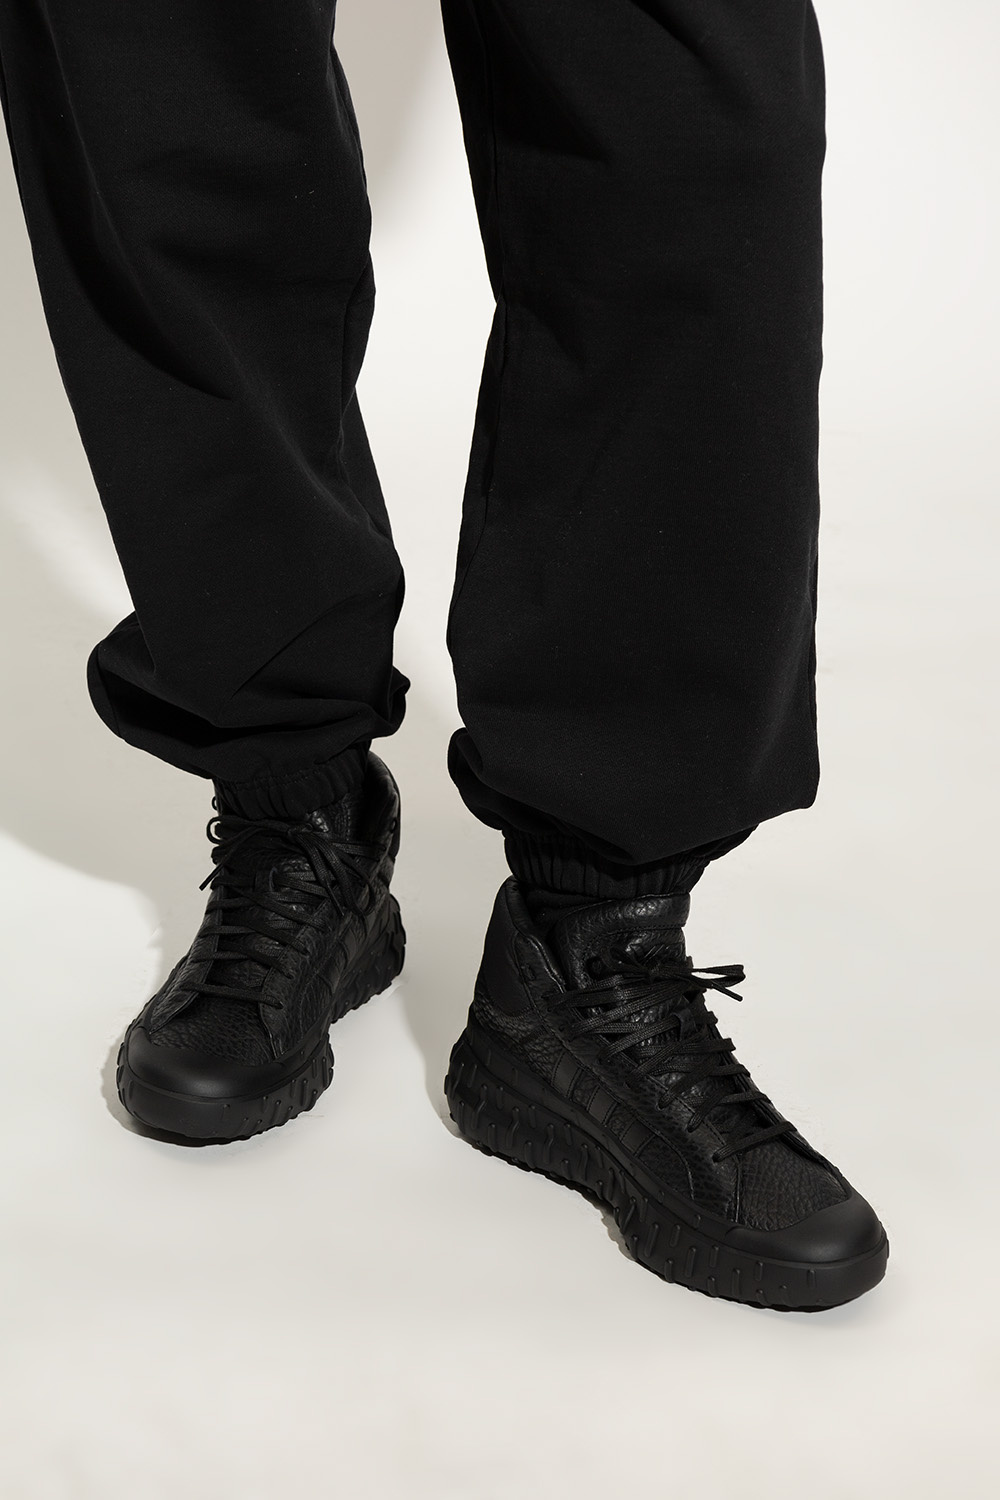 Y-3 Yohji Yamamoto ‘GR.1P High’ sneakers